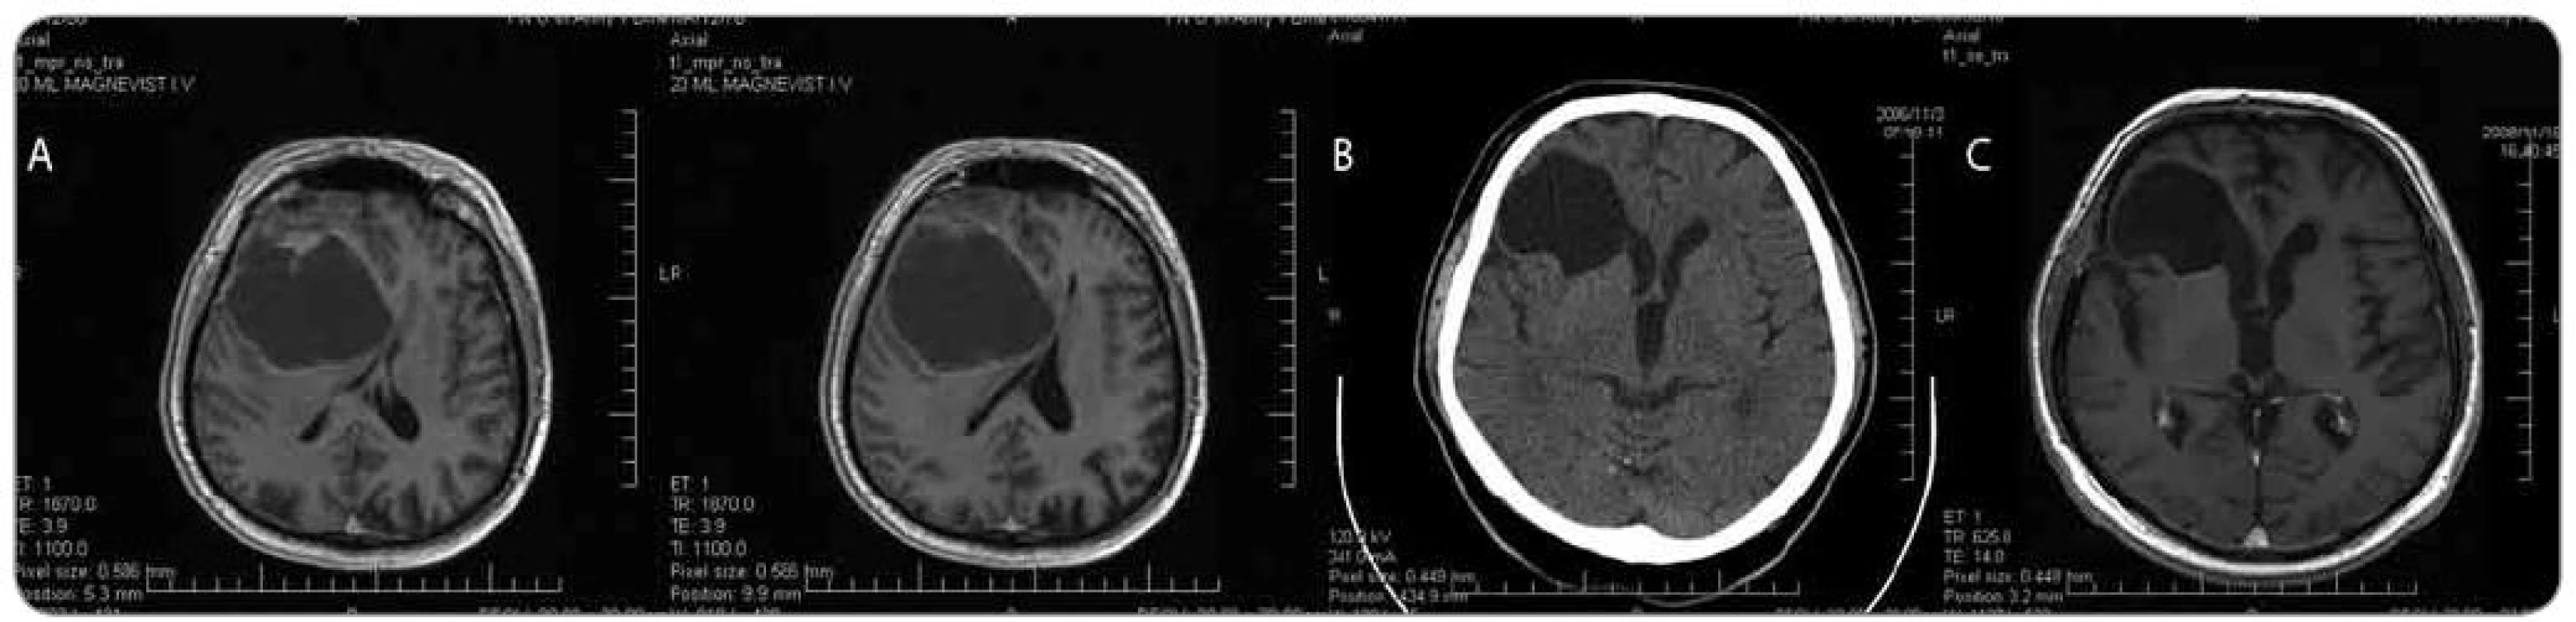 Muž, 64 let, klinicky nitrolební hypertenze, levostranná hemiparéza, pro meningizmus hospitalizace KICH. a) MRI mozku s nálezem cystické expanze frontálně vpravo s přetlakem středočárových struktur, b) endoskopická revize s odběrem biopsie ze stěny cysty, fenestrace cysty do komory, histologicky anaplastický astrocytom; CT s odstupem 3 týdnů po výkonu, c) MRI kontrola s odstupem přibližně 2 let po výkonu. Po komplexní onkologické léčbě přežití 3 roky, stav po plicní embolii v pooperačním období.